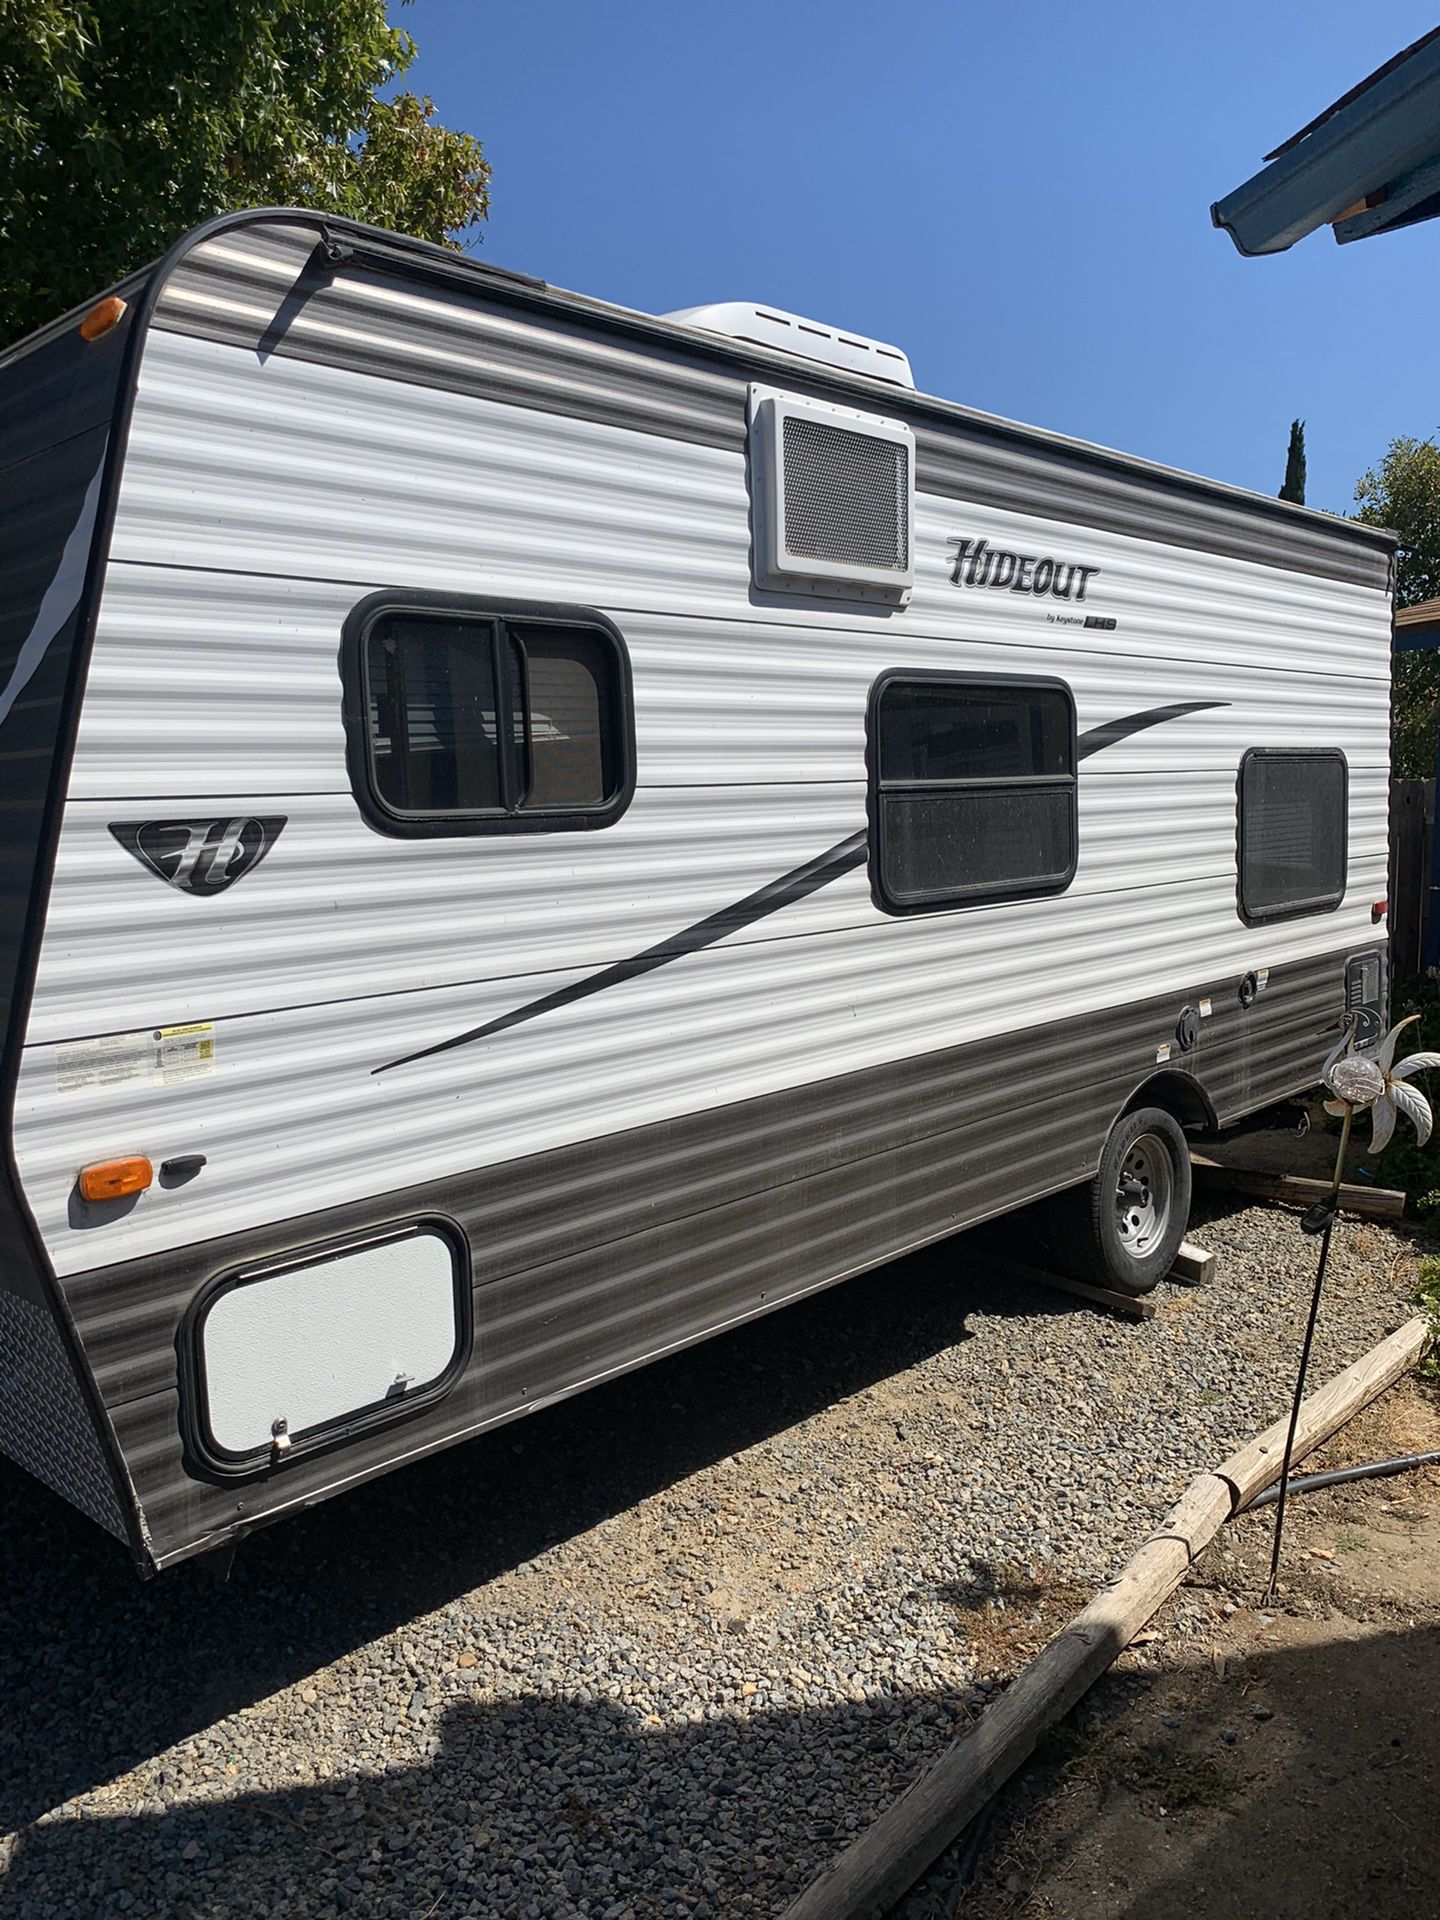 Keystone hideout camper trailer